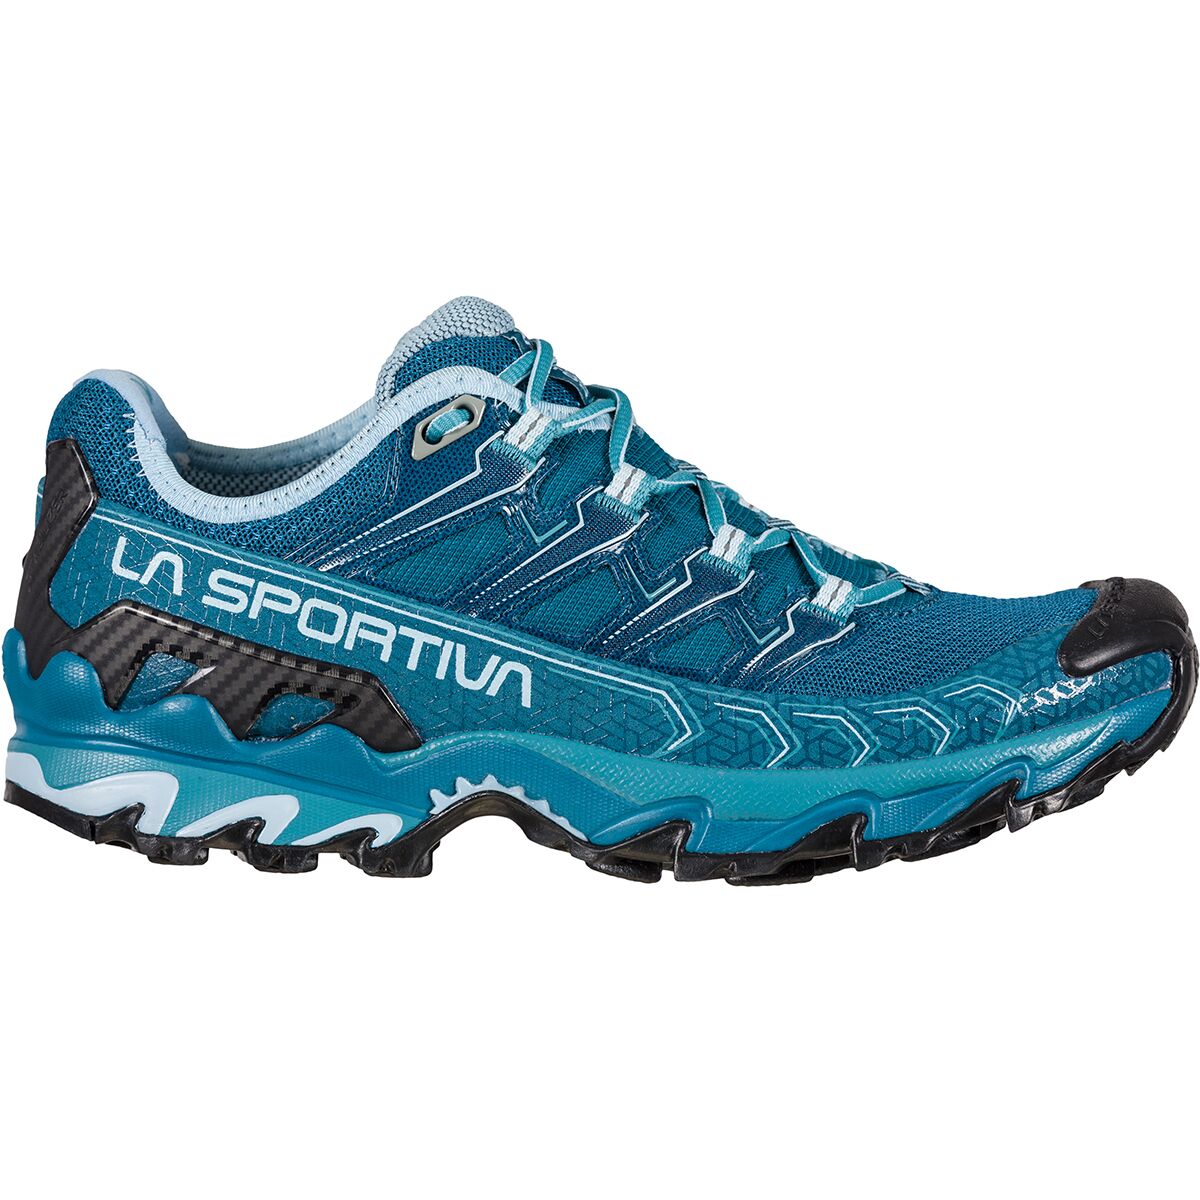 La Sportiva Ultra Raptor II Trail Running Shoe - Women's